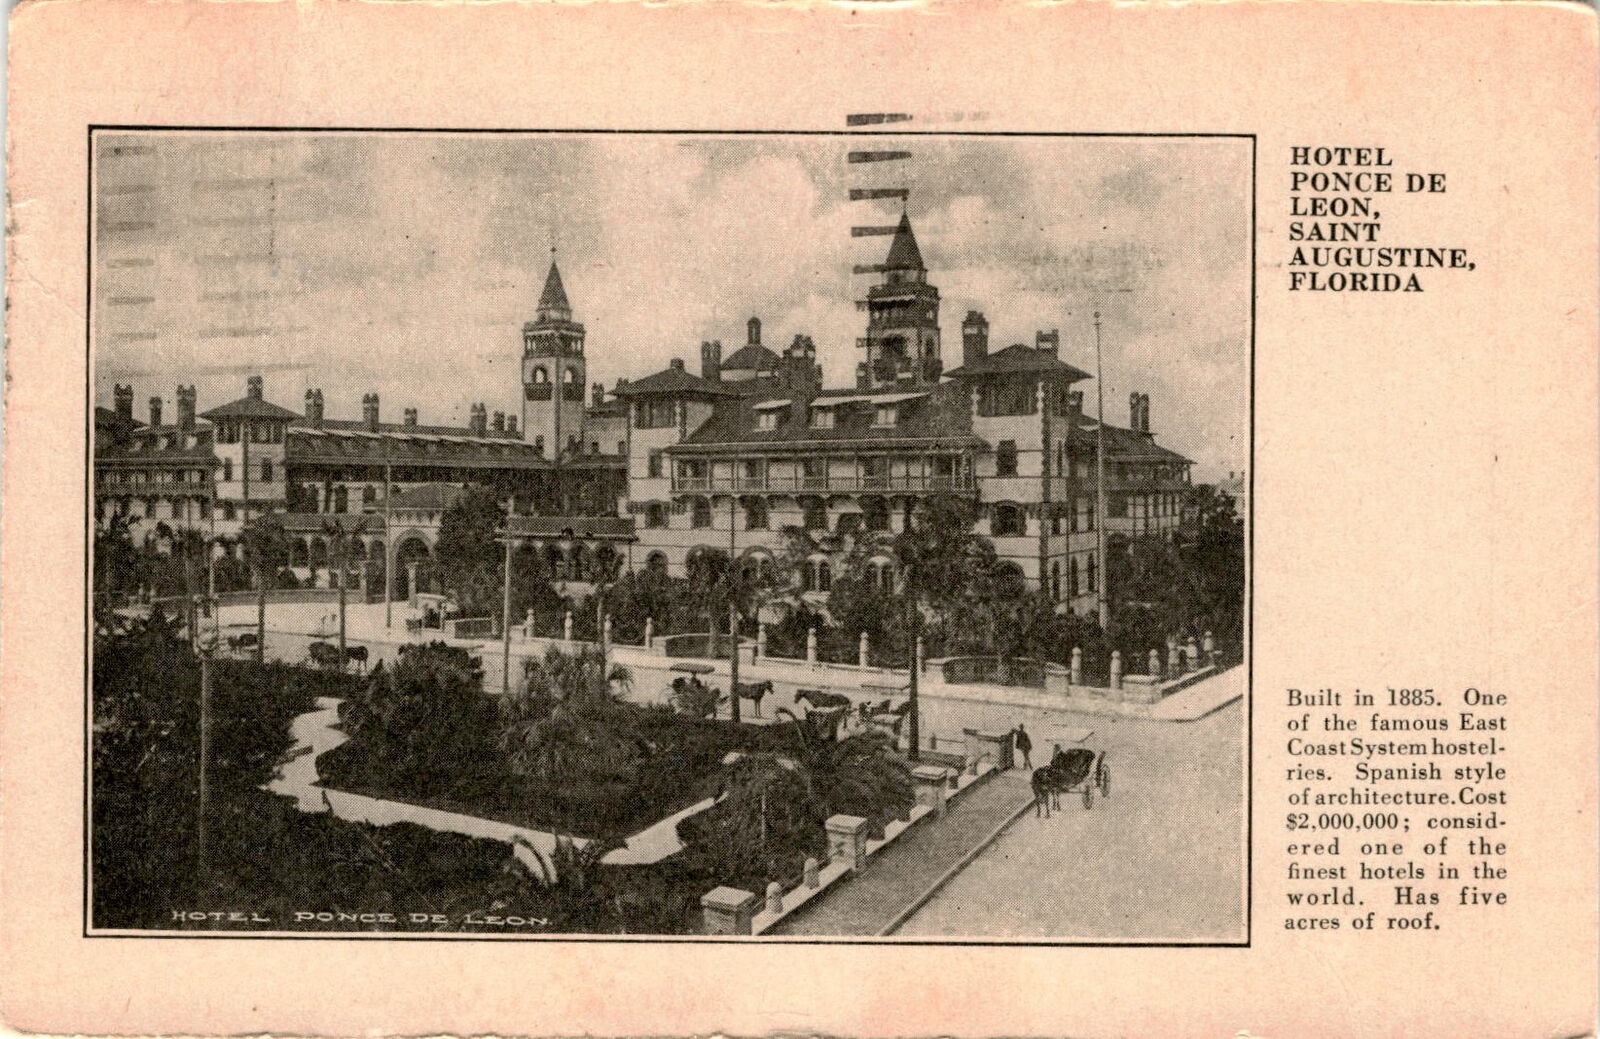 Hotel Ponce De Leon, Saint Augustine, Florida, construction 1885, Postcard